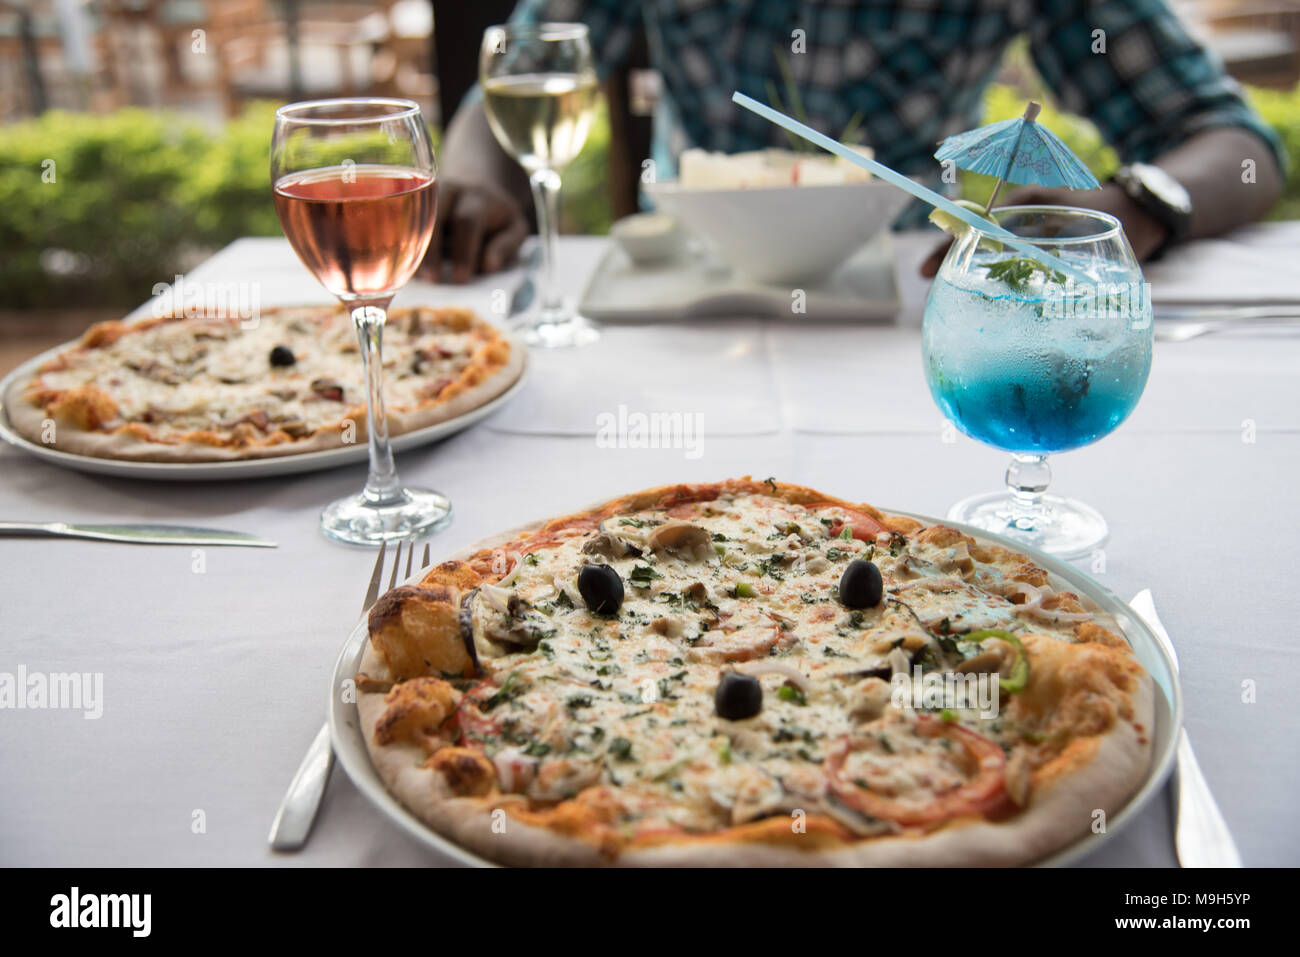 Foto von Restaurant Tisch mit zwei Pizzen und einen Salat. Auch ein helles Blau Cocktail und Glas rosa Wein. Ein dunkelhäutiger Mann sitzt im Hintergrund. Stockfoto